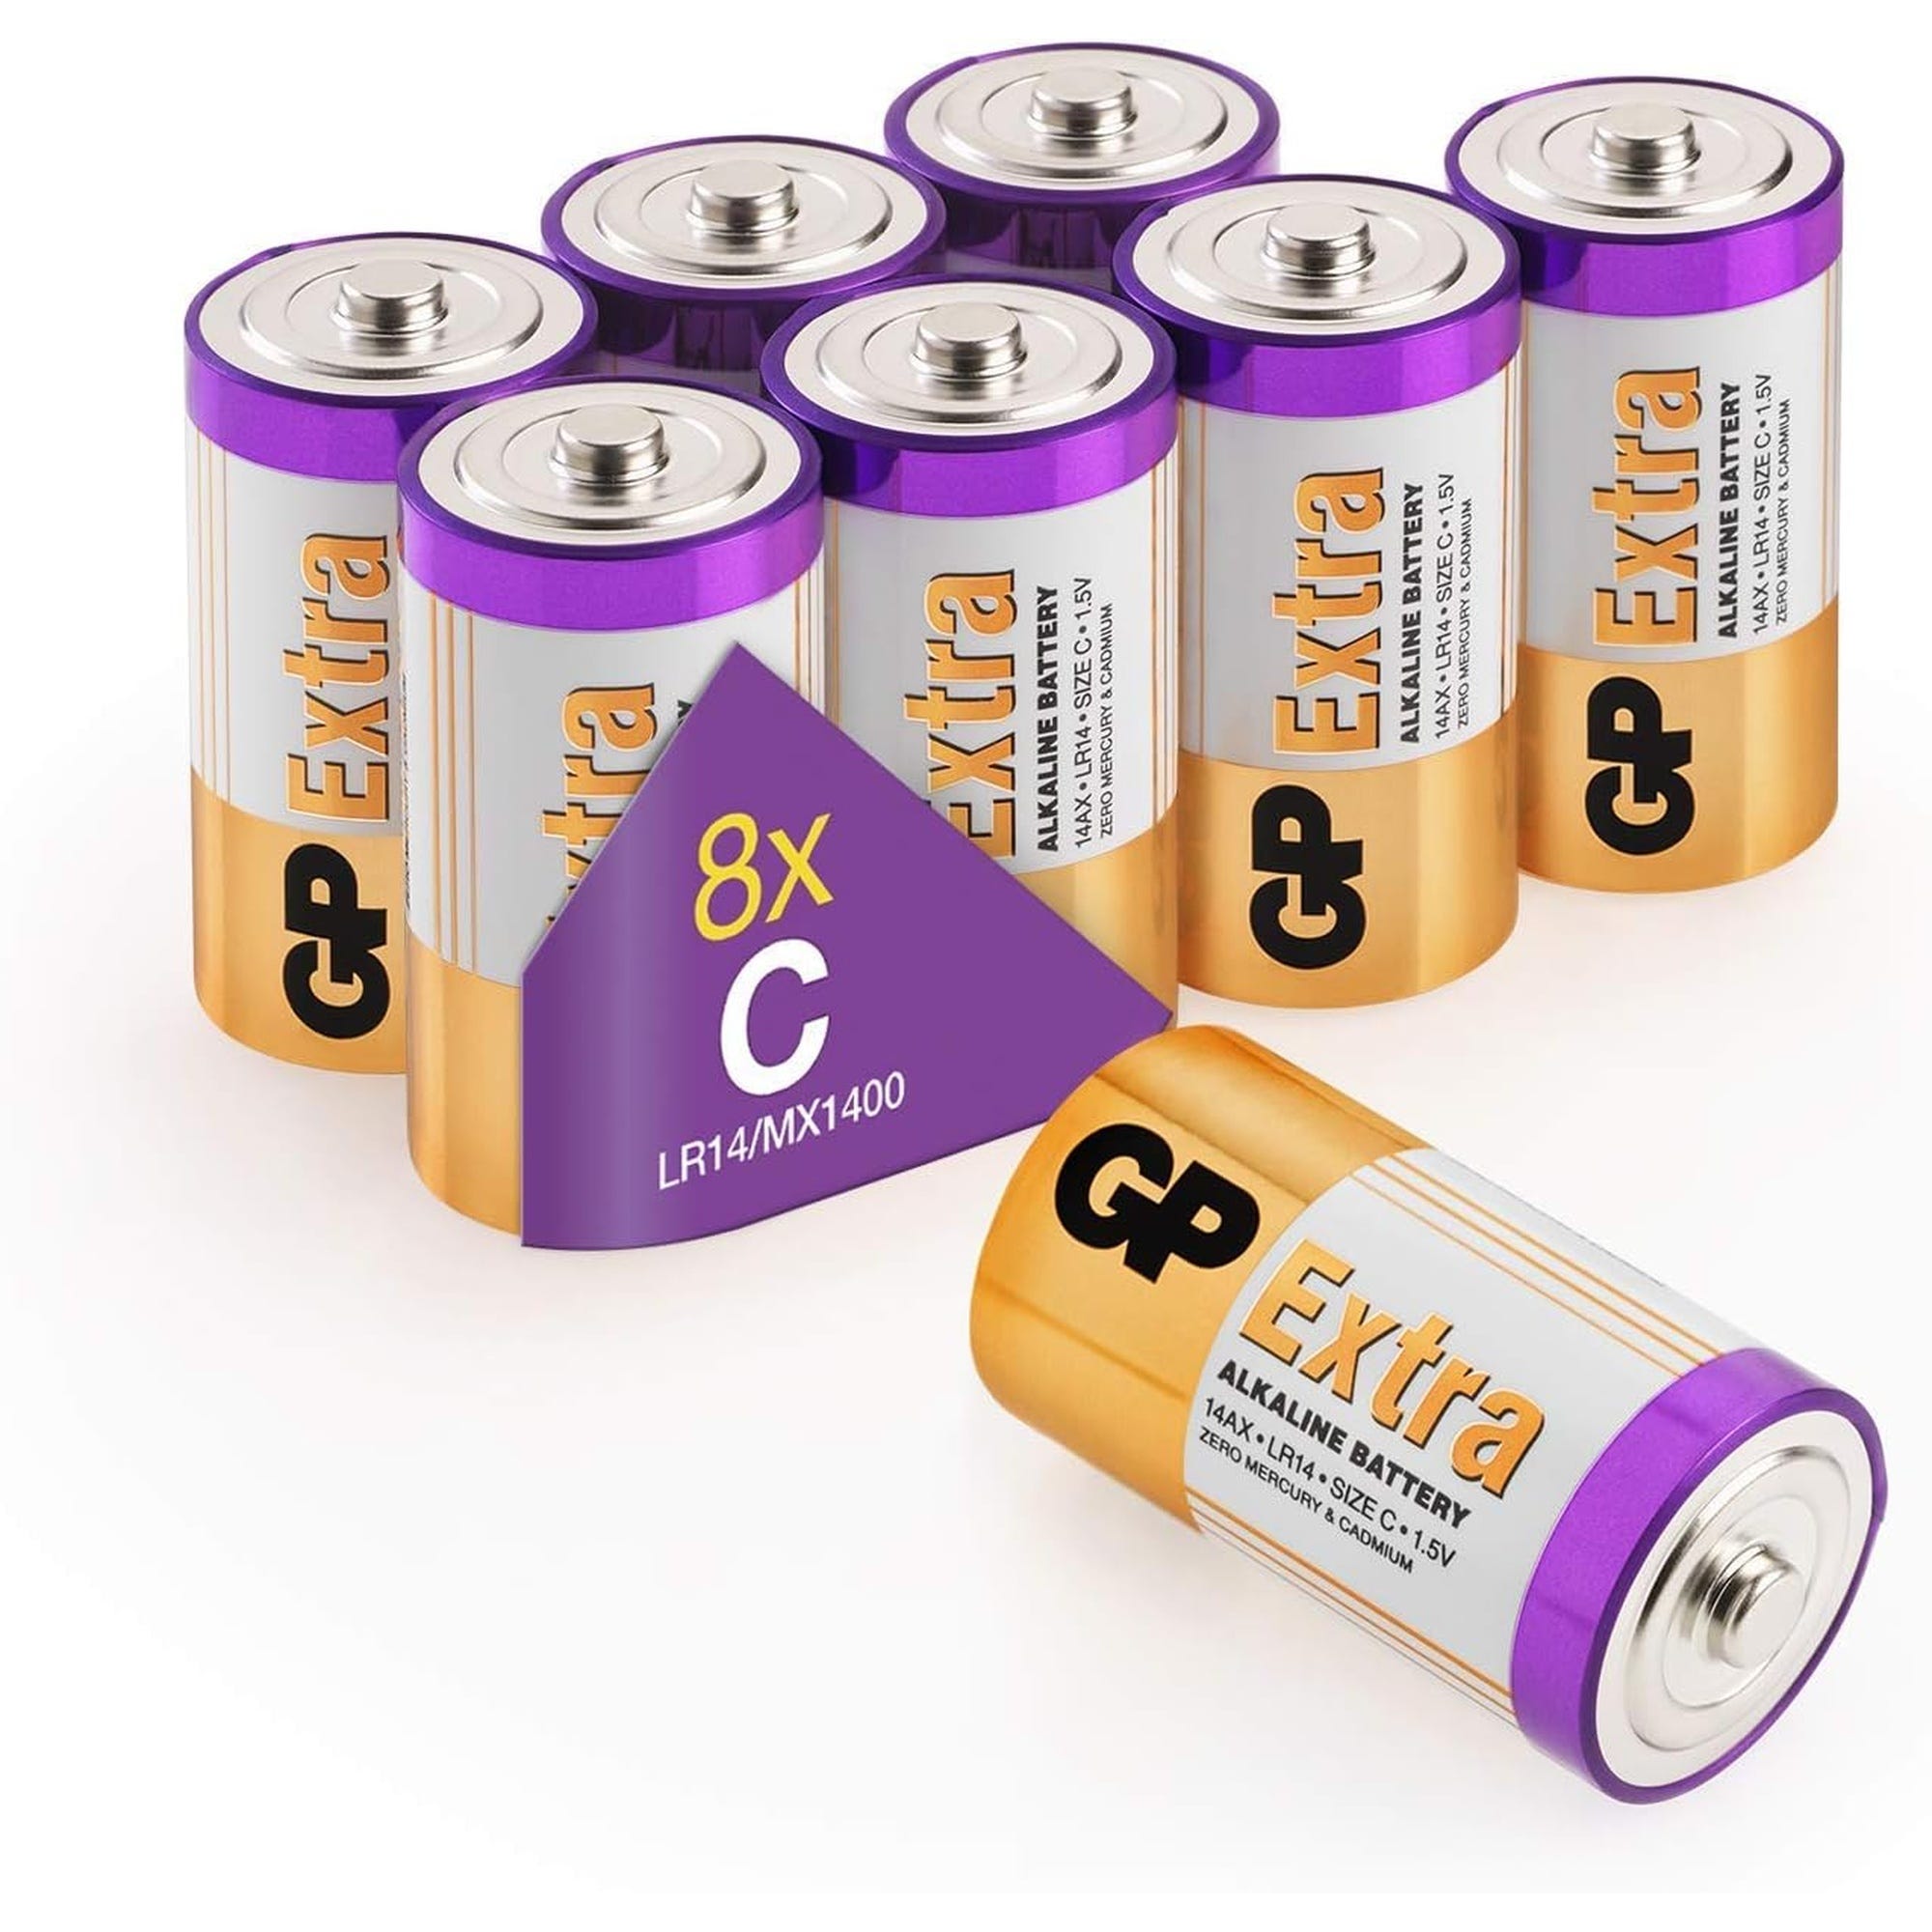 Piles C - Lot de 8 Piles, GP Extra, Batteries Alcalines Type C Baby lr14  1,5v, Longue durée, très puissantes, utilisation quotidienne